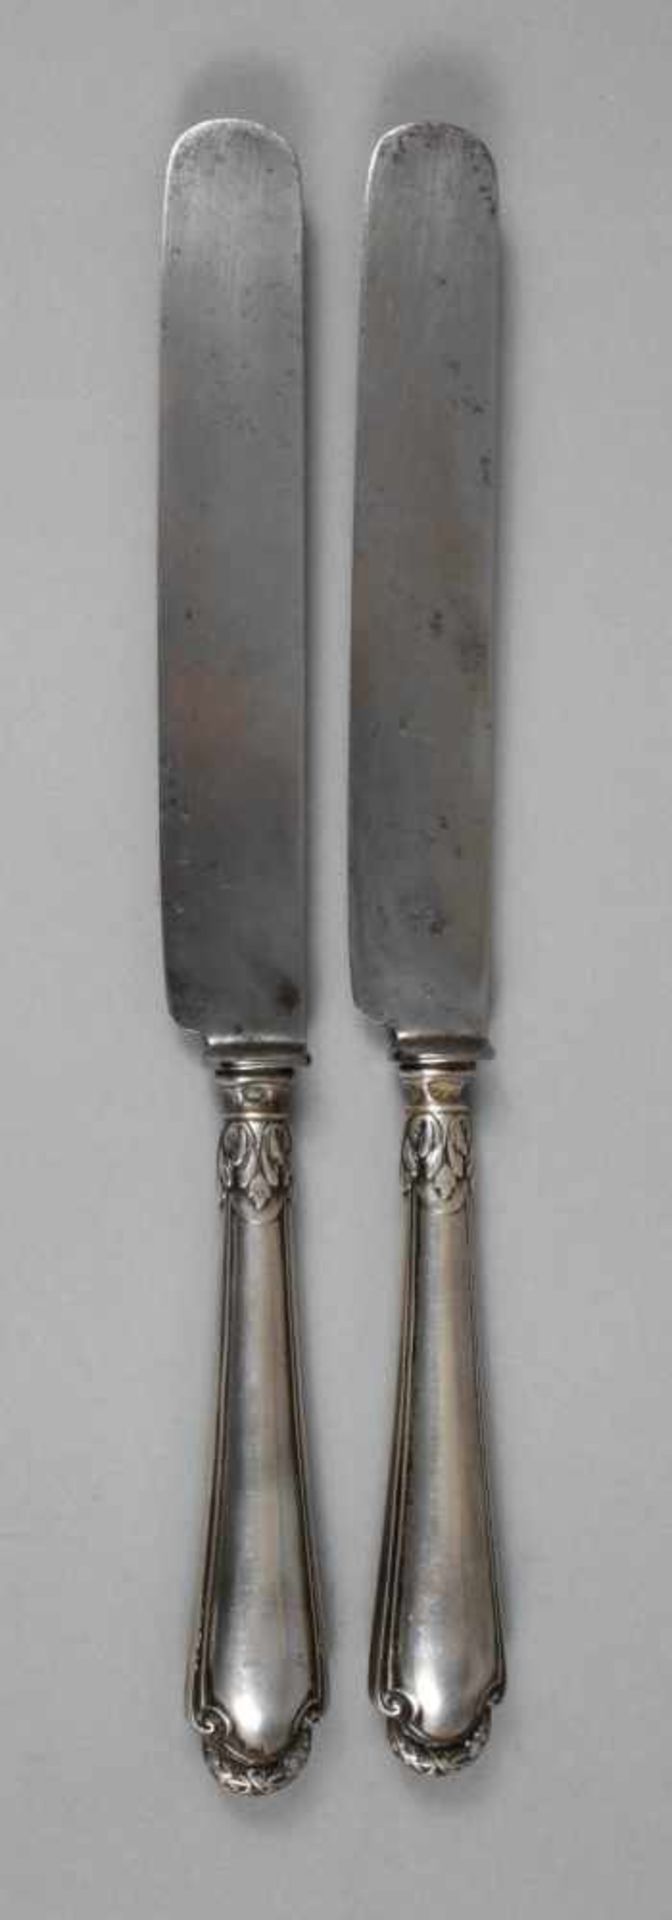 Silber zwei Messer Carl Fabergé St. Petersburg 1908/17, kyrillische Meistermarke KF, weitere